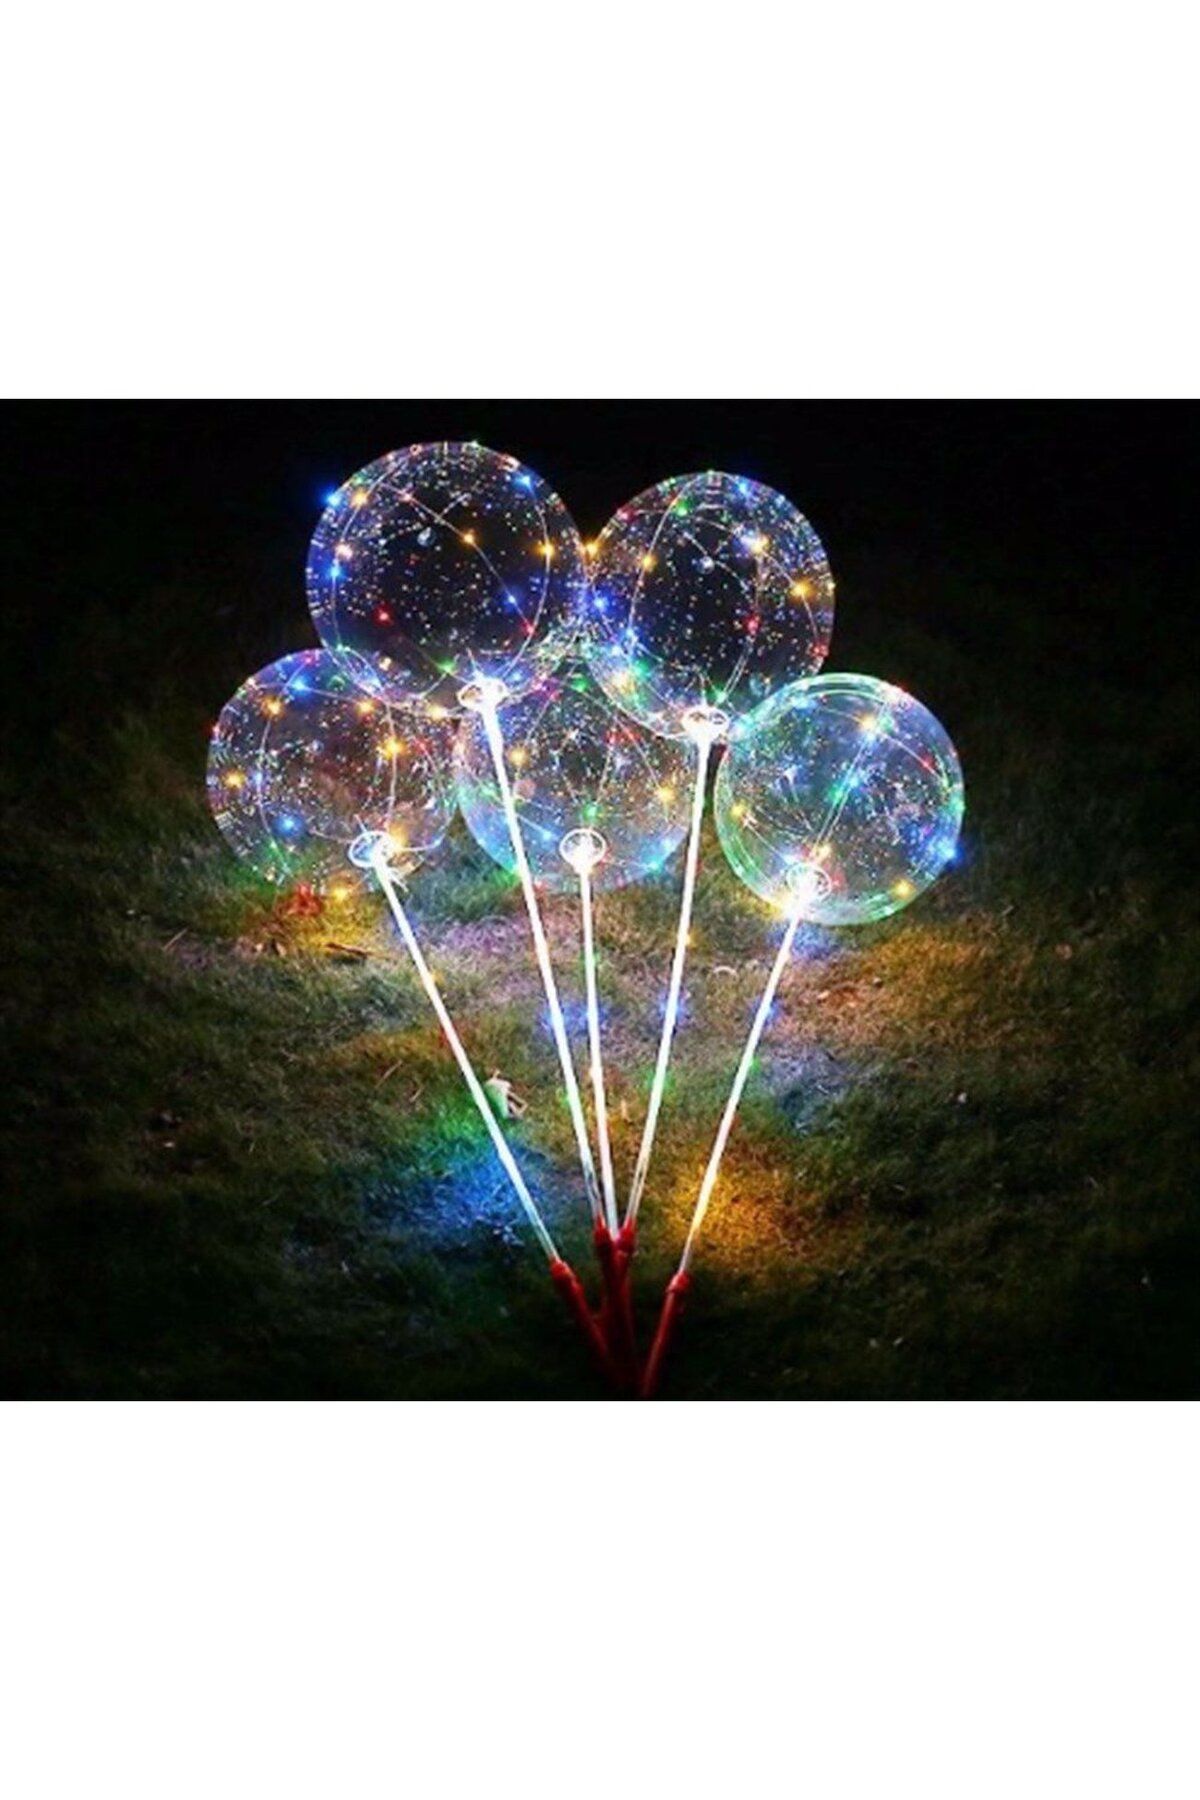 Bobo Işıklı Balon Seti Pil Hediyeli ( Tam Set )- 3 Fonksiyonlu - Yüksek Kalite - Pil Hediyeli